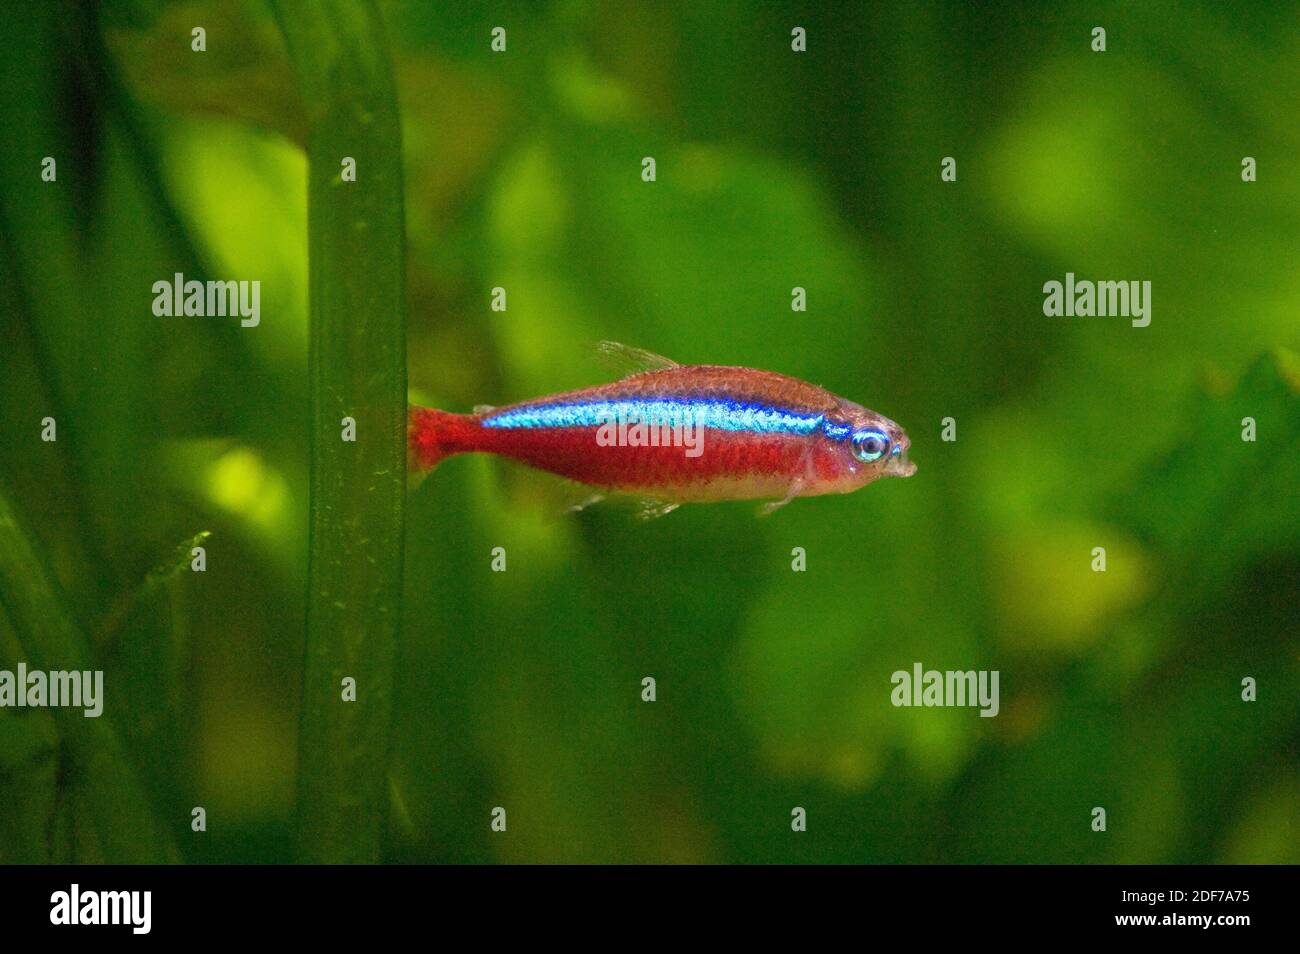 Neon tetra fish immagini e fotografie stock ad alta risoluzione - Alamy